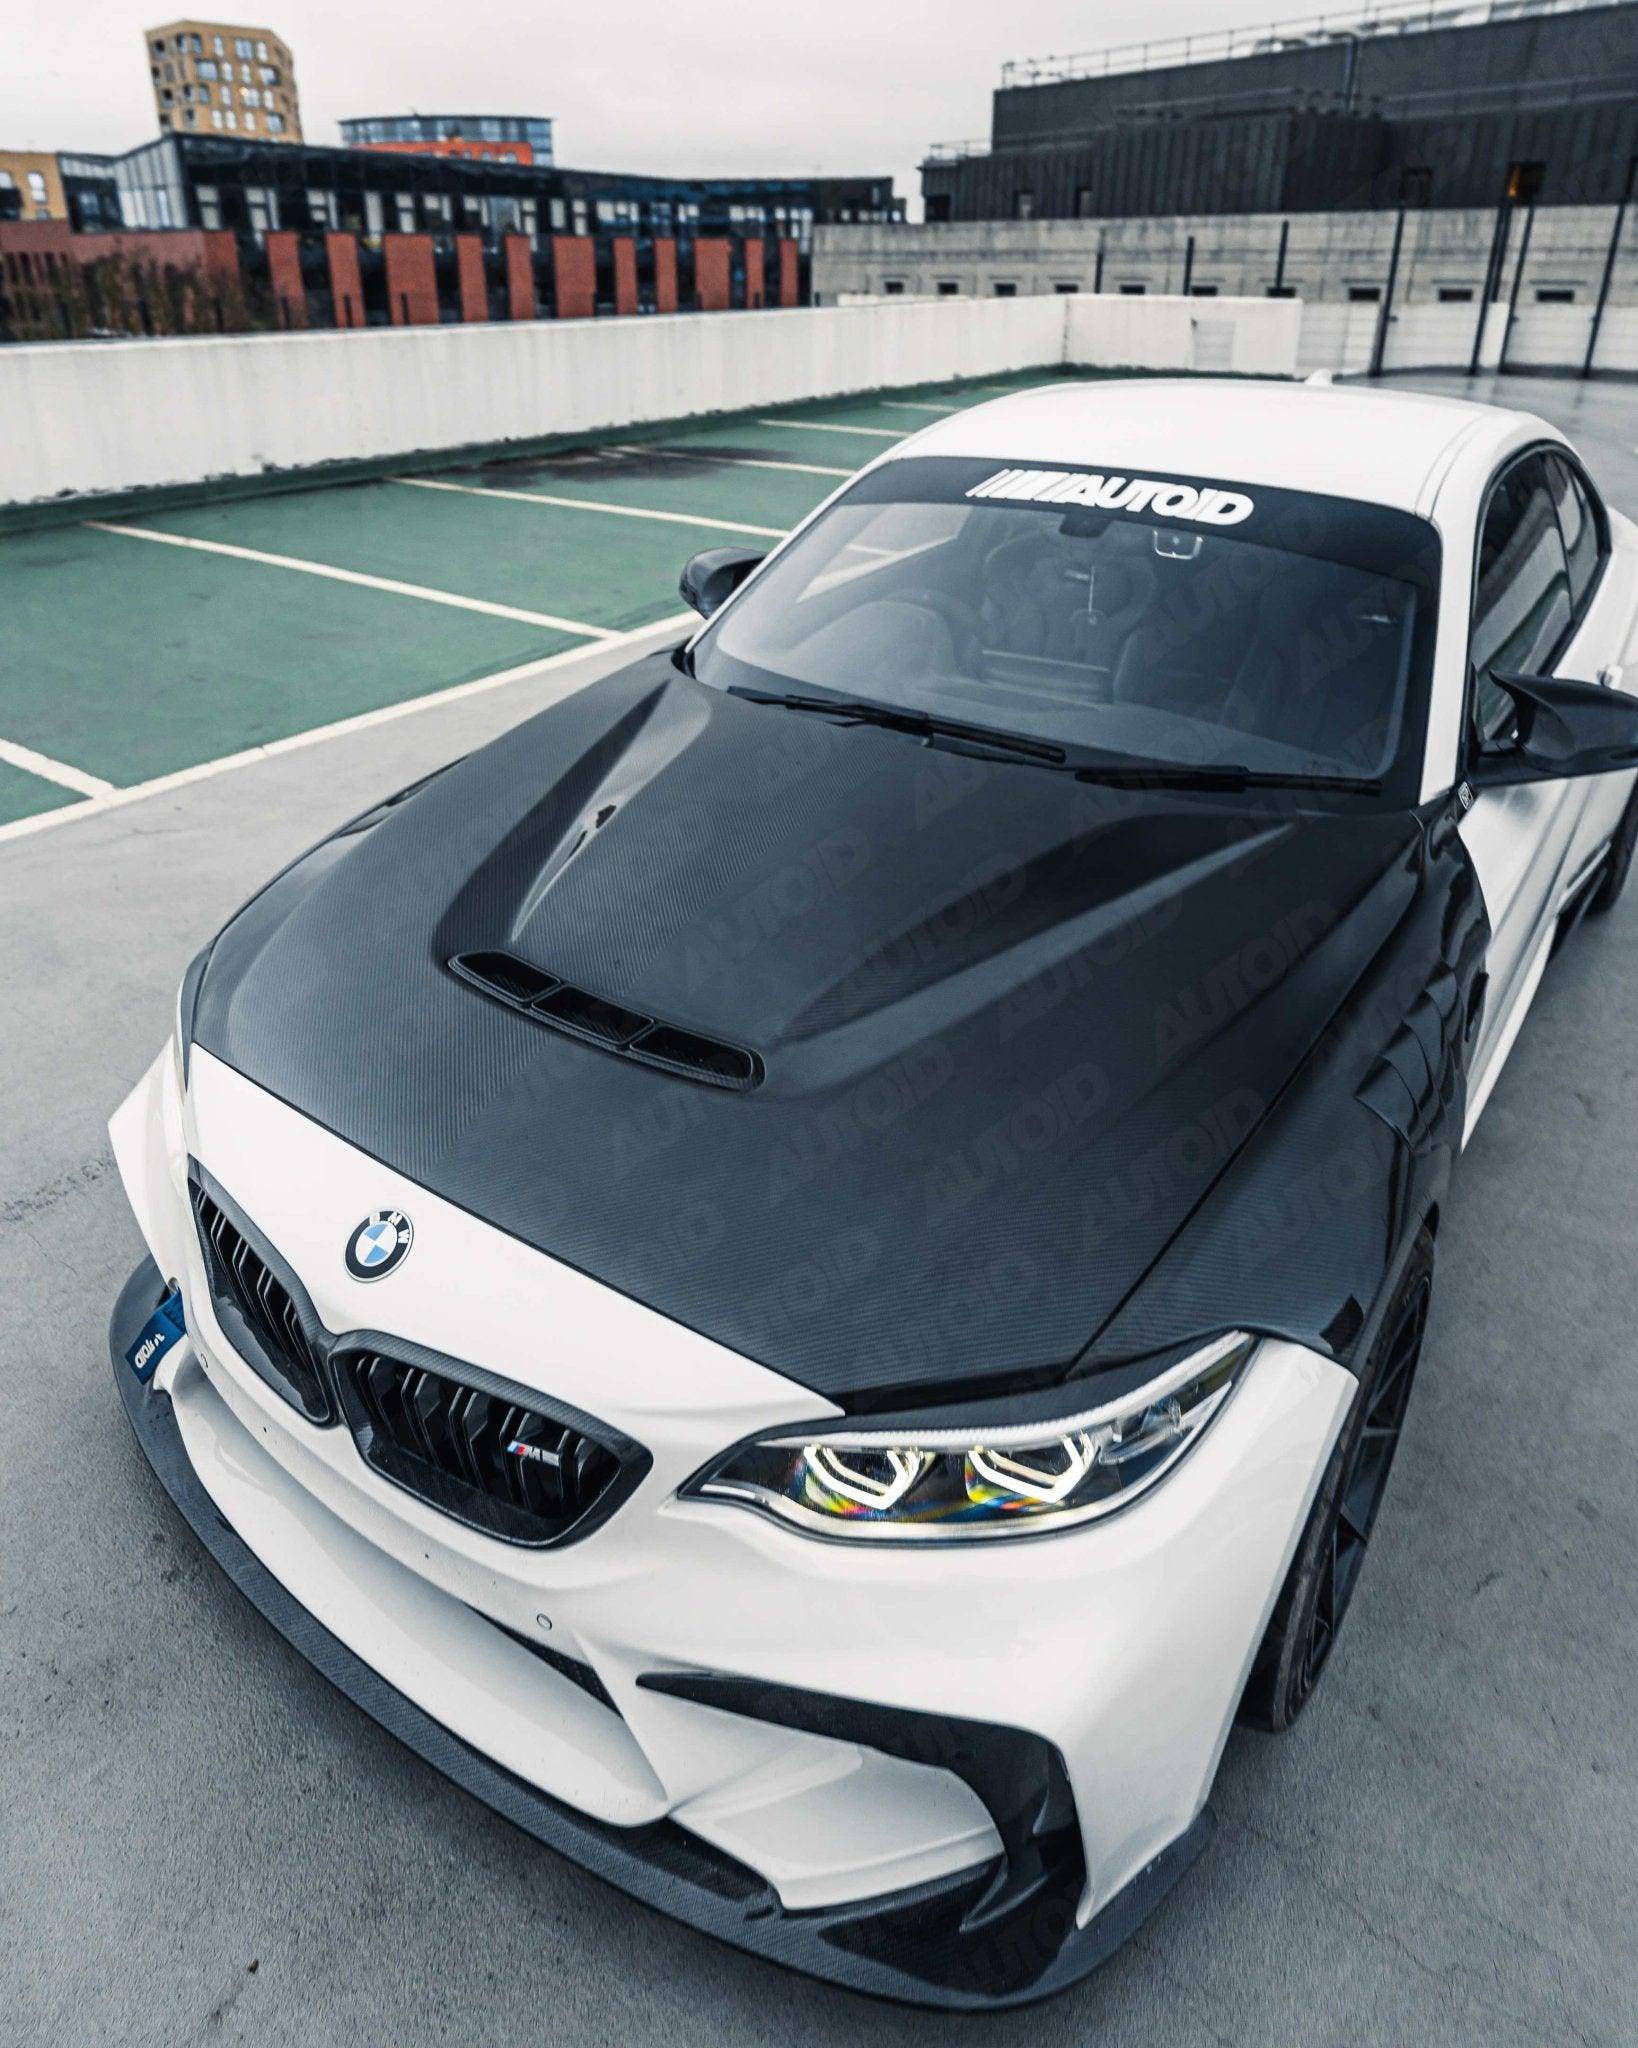 TRE Pre-Preg Carbon Fibre CS Bonnet for BMW 1 Series, 2 Series & M2 (2014-2021, F20 F22 F87), Front Hood, TRE - AUTOID | Premium Automotive Accessories